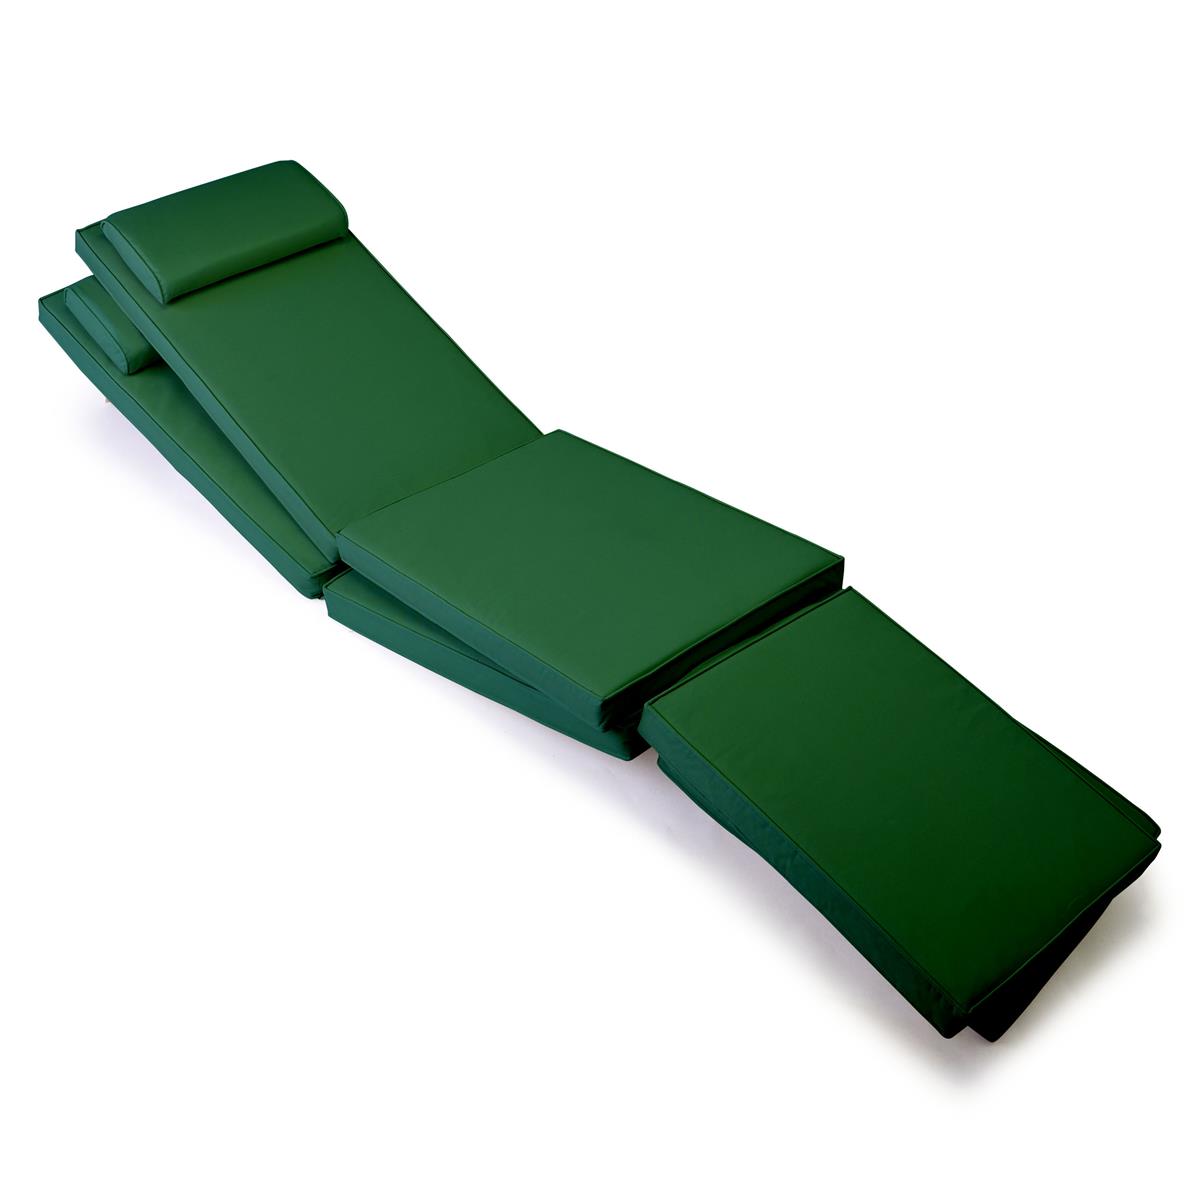 DIVERO 2x Liegenauflage für Deckchair Steamer Liegestuhl-Auflage Polster grün